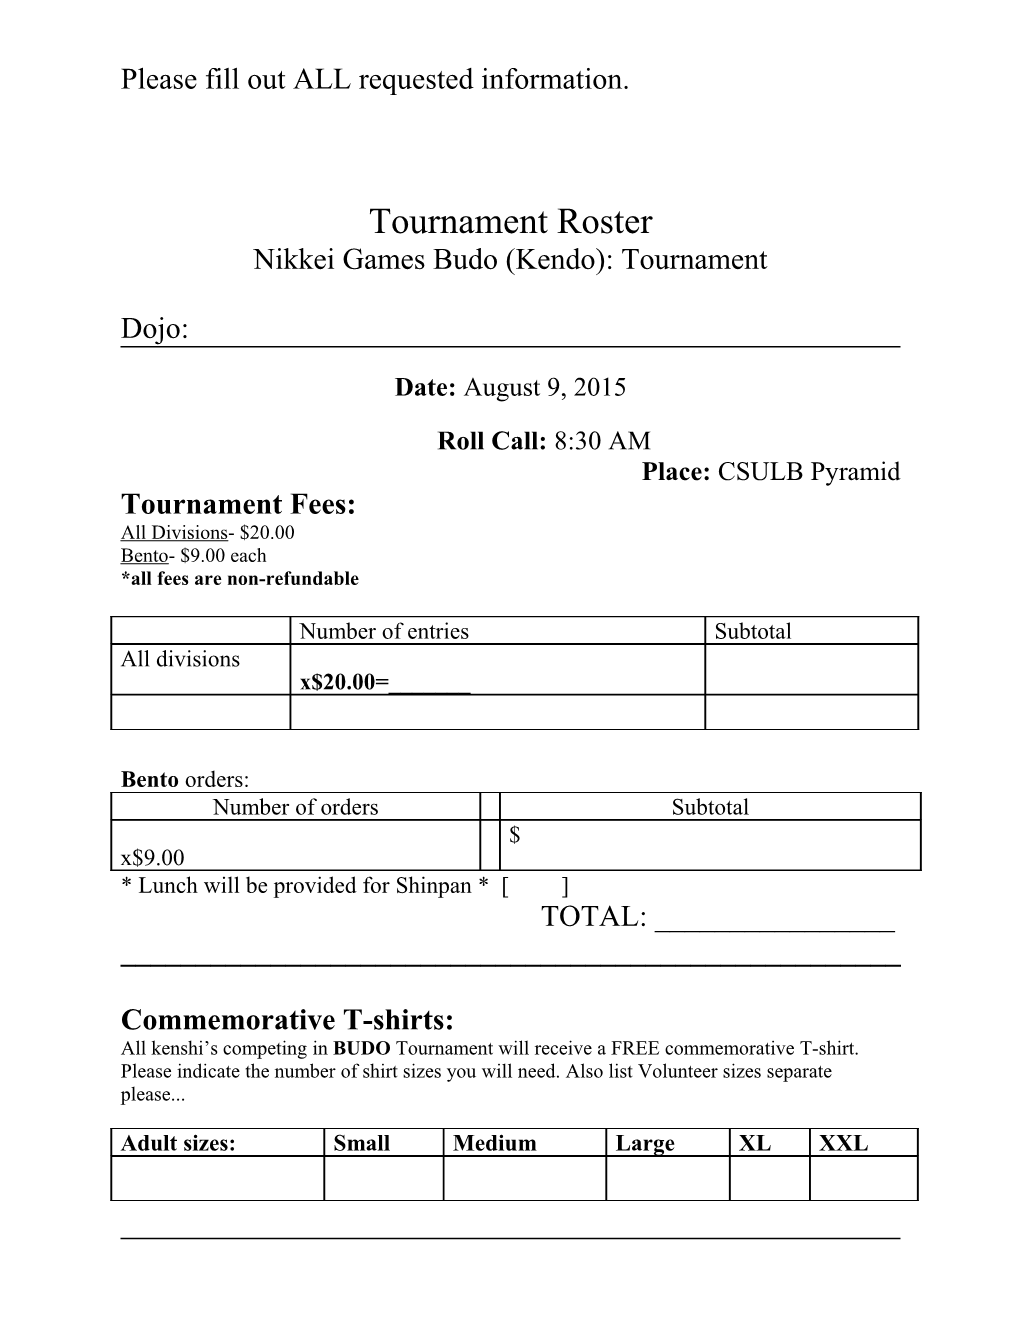 14Th Nikkei Games: Budo Tournament (Kendo)